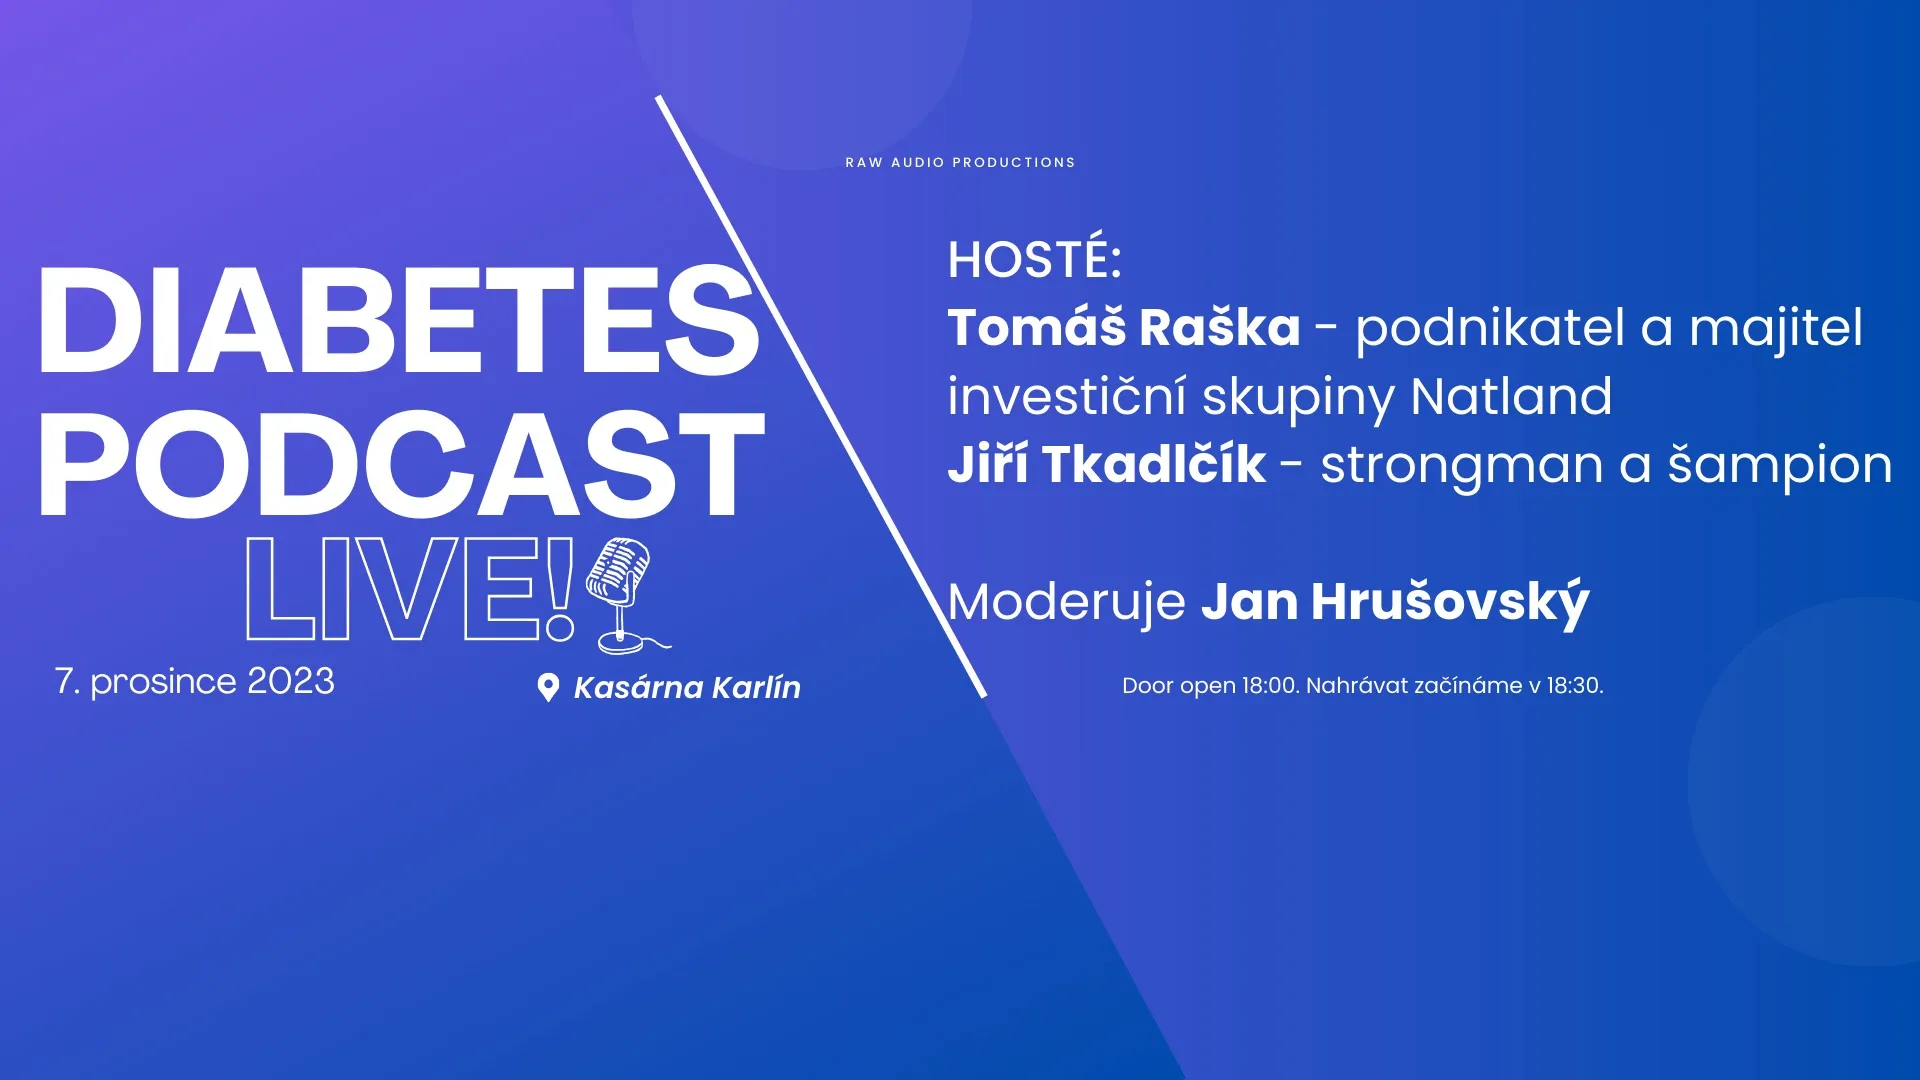 Zveme Vás na Diabetes Podcast živě 🎙️ 7. 12. v Kasárnách Karlín